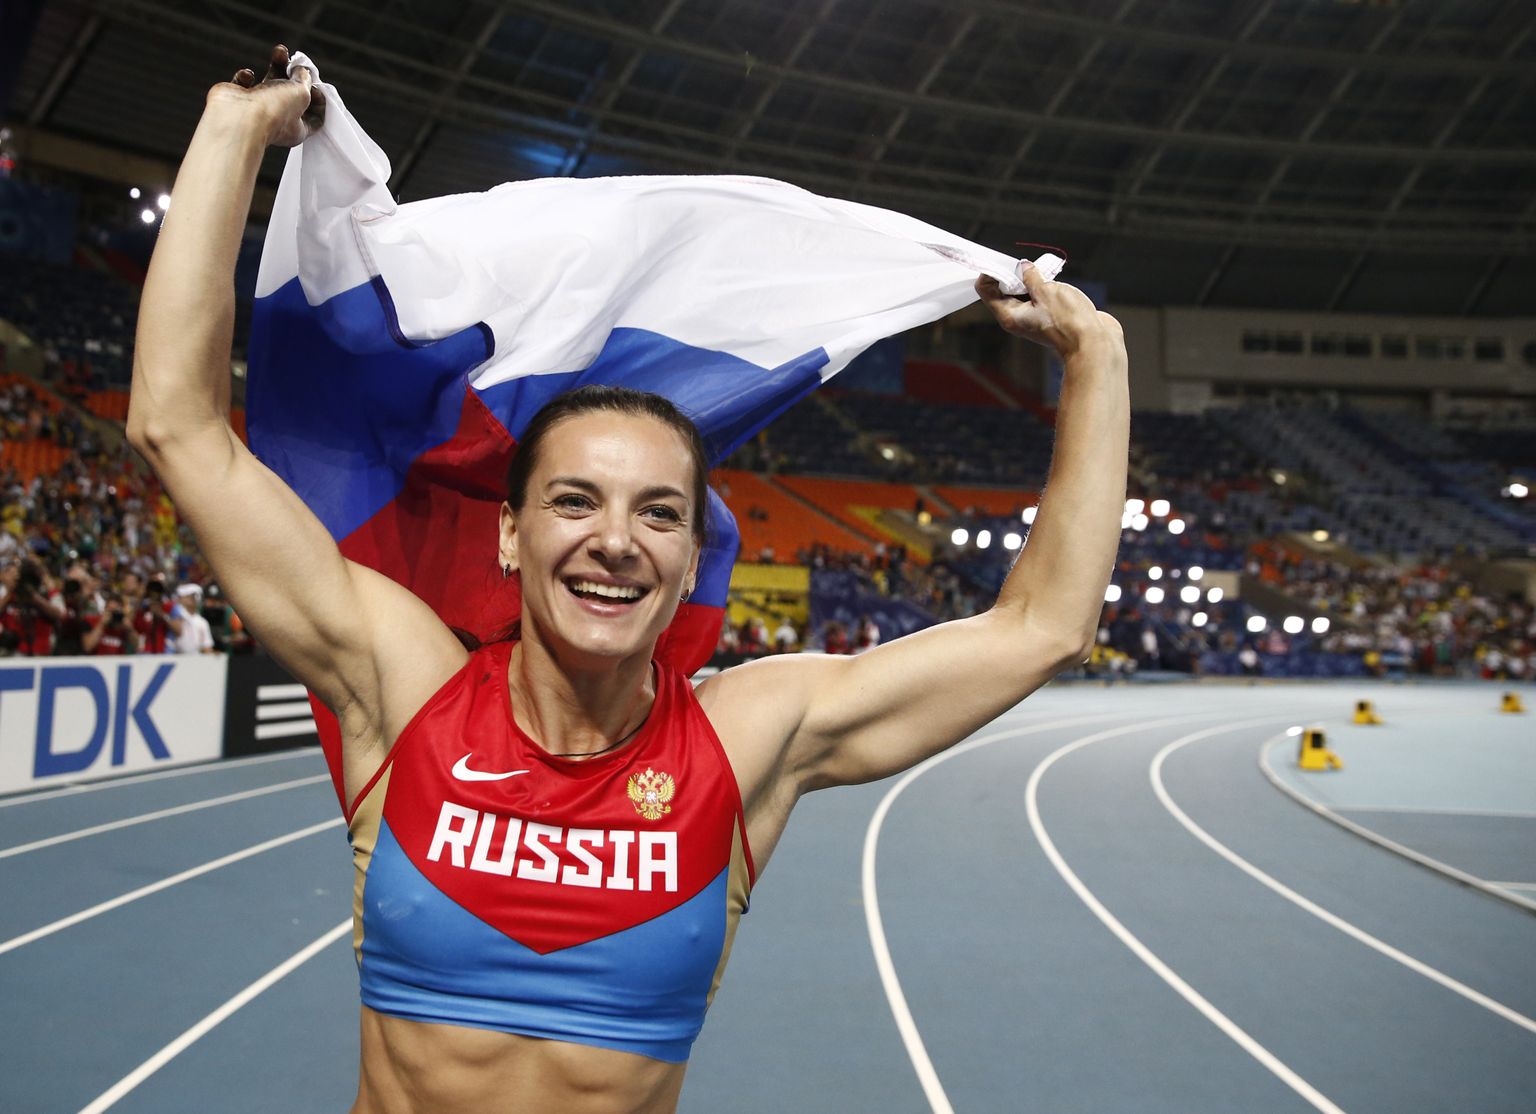 Venemaa endise teivashüppaja Jelena Isinbajeva sportlastee on lõppenud, kuid ainsa venelasena kuulub ta Rahvusvahlise olümpiakomitee (ROK) sportlaskomisjoni. Tema kaheksa-aastane ametiaeg kestab 2024. aastani ning selle aja jooksul võidakse venelased taas võistlusareenile lubada.